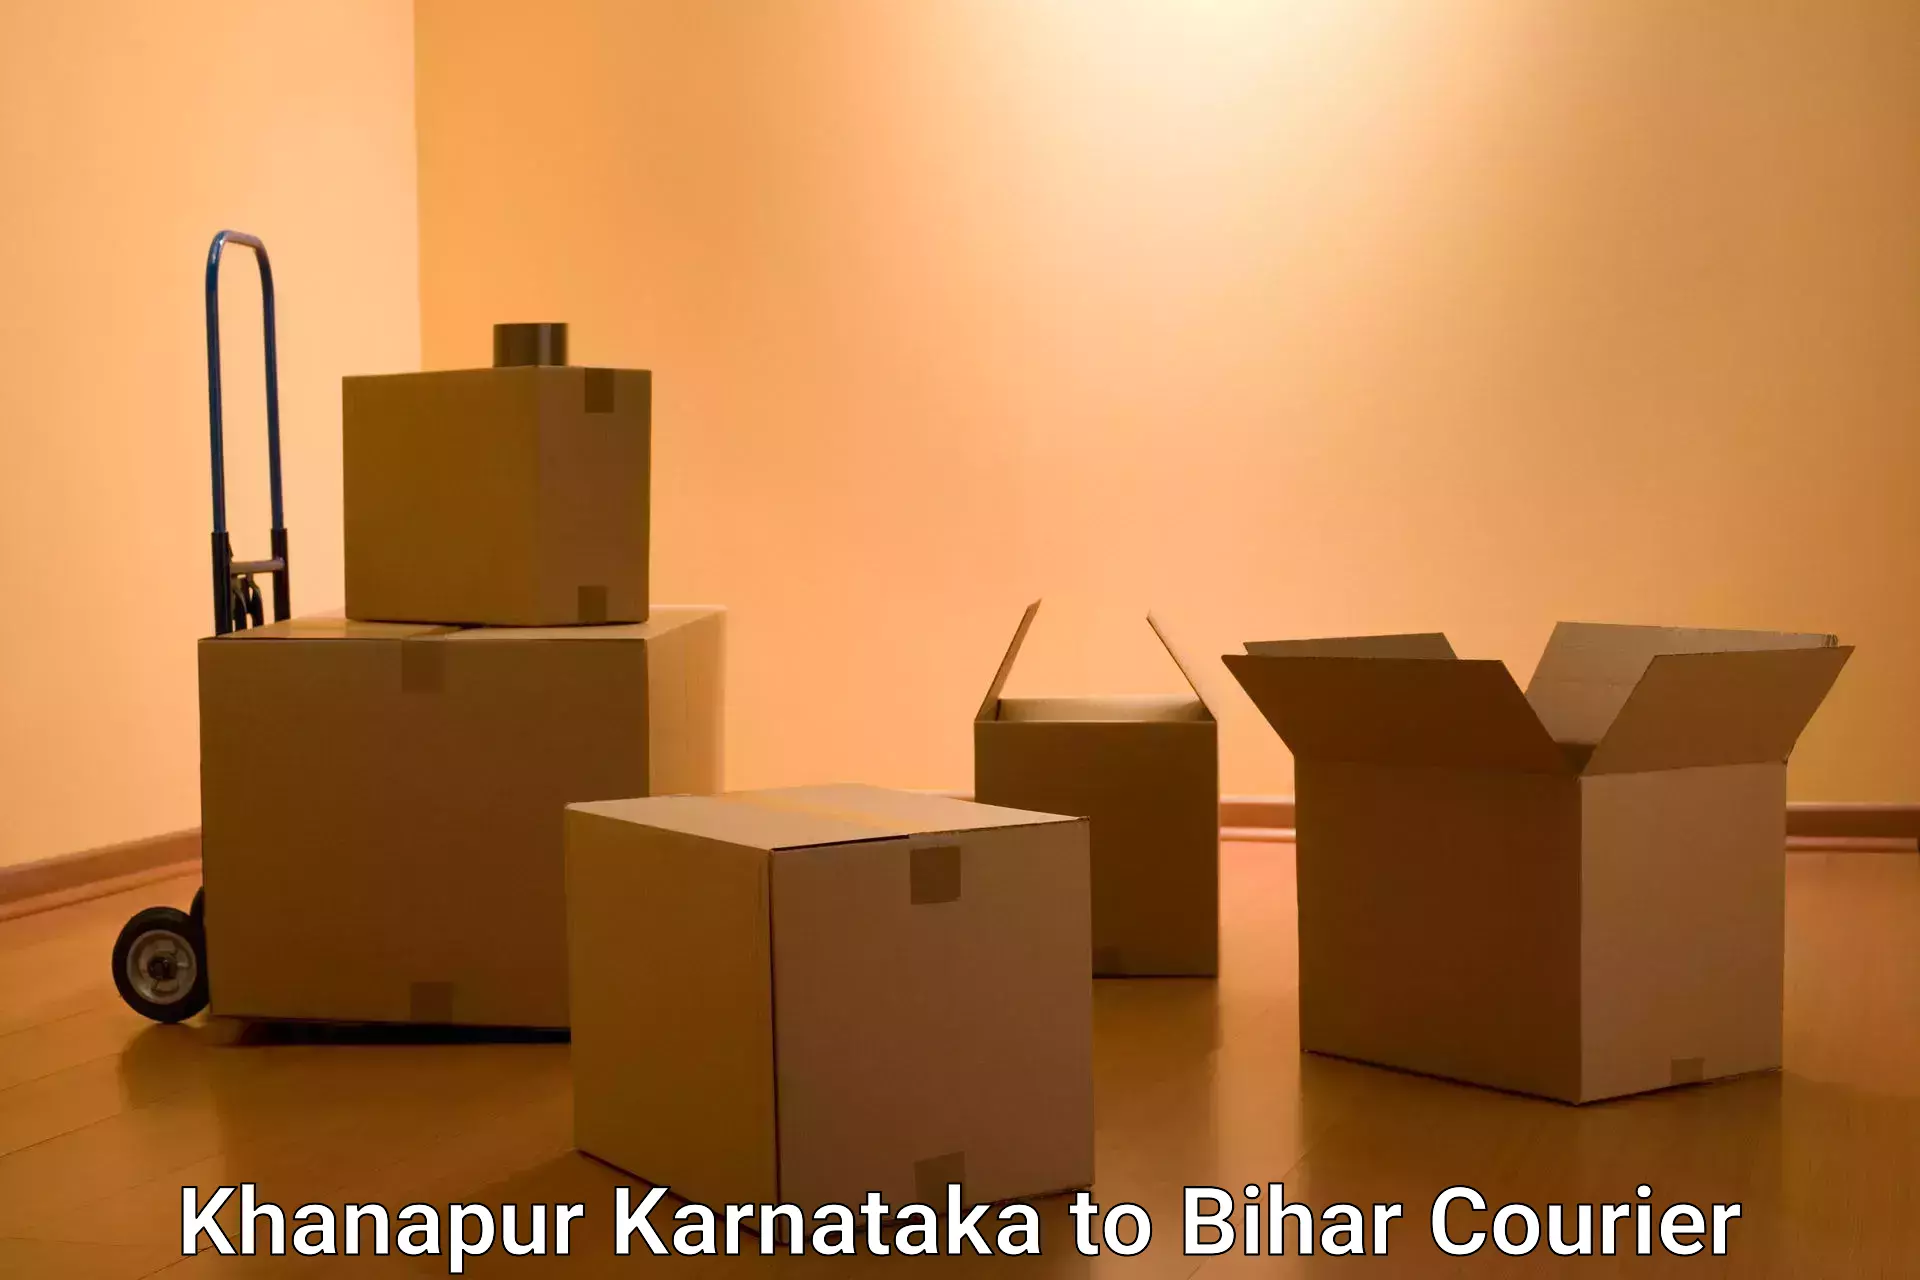 Express delivery solutions Khanapur Karnataka to Siwan